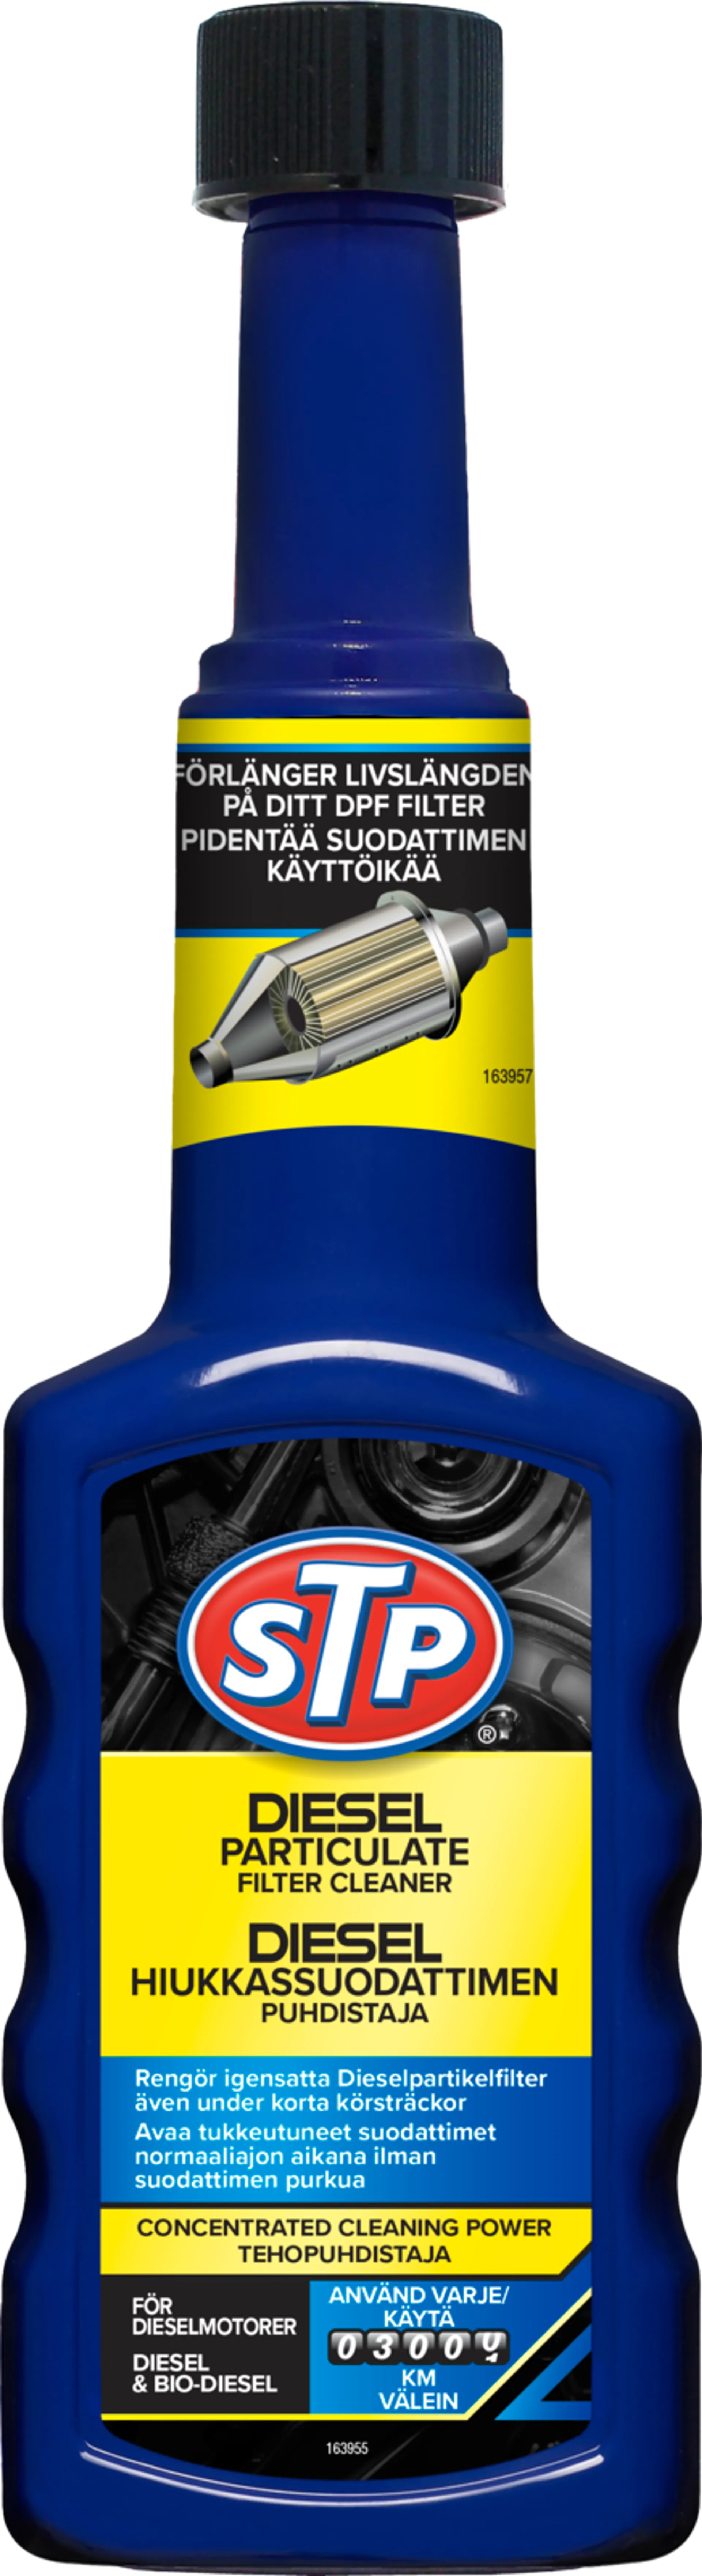 STP Diesel hiukkassuodattimen puhdistaja